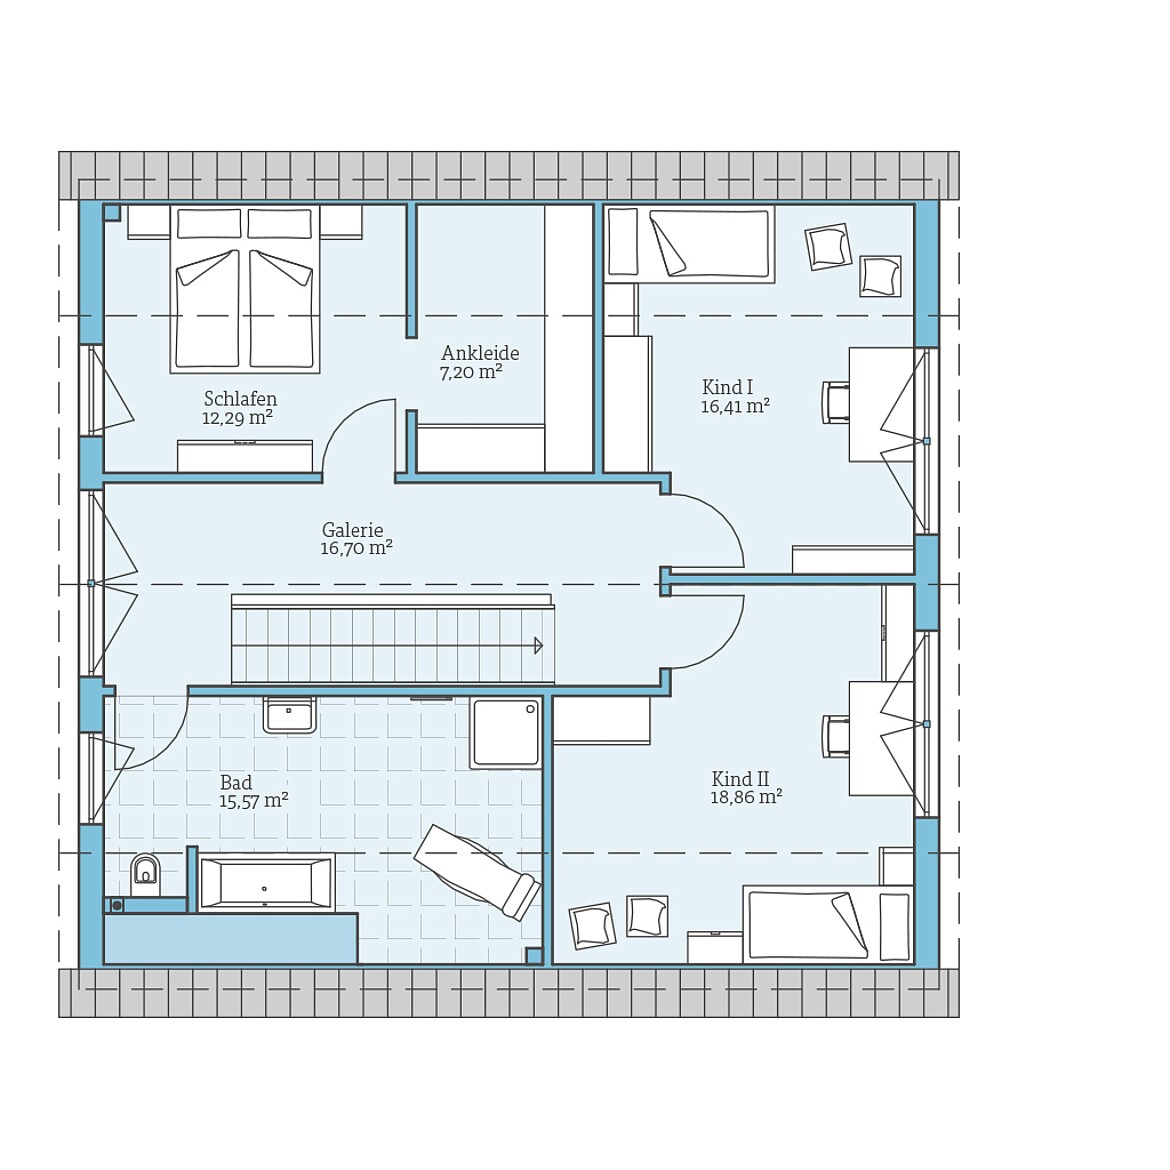 Prefabricated house Variant 35-176: Top floor plan